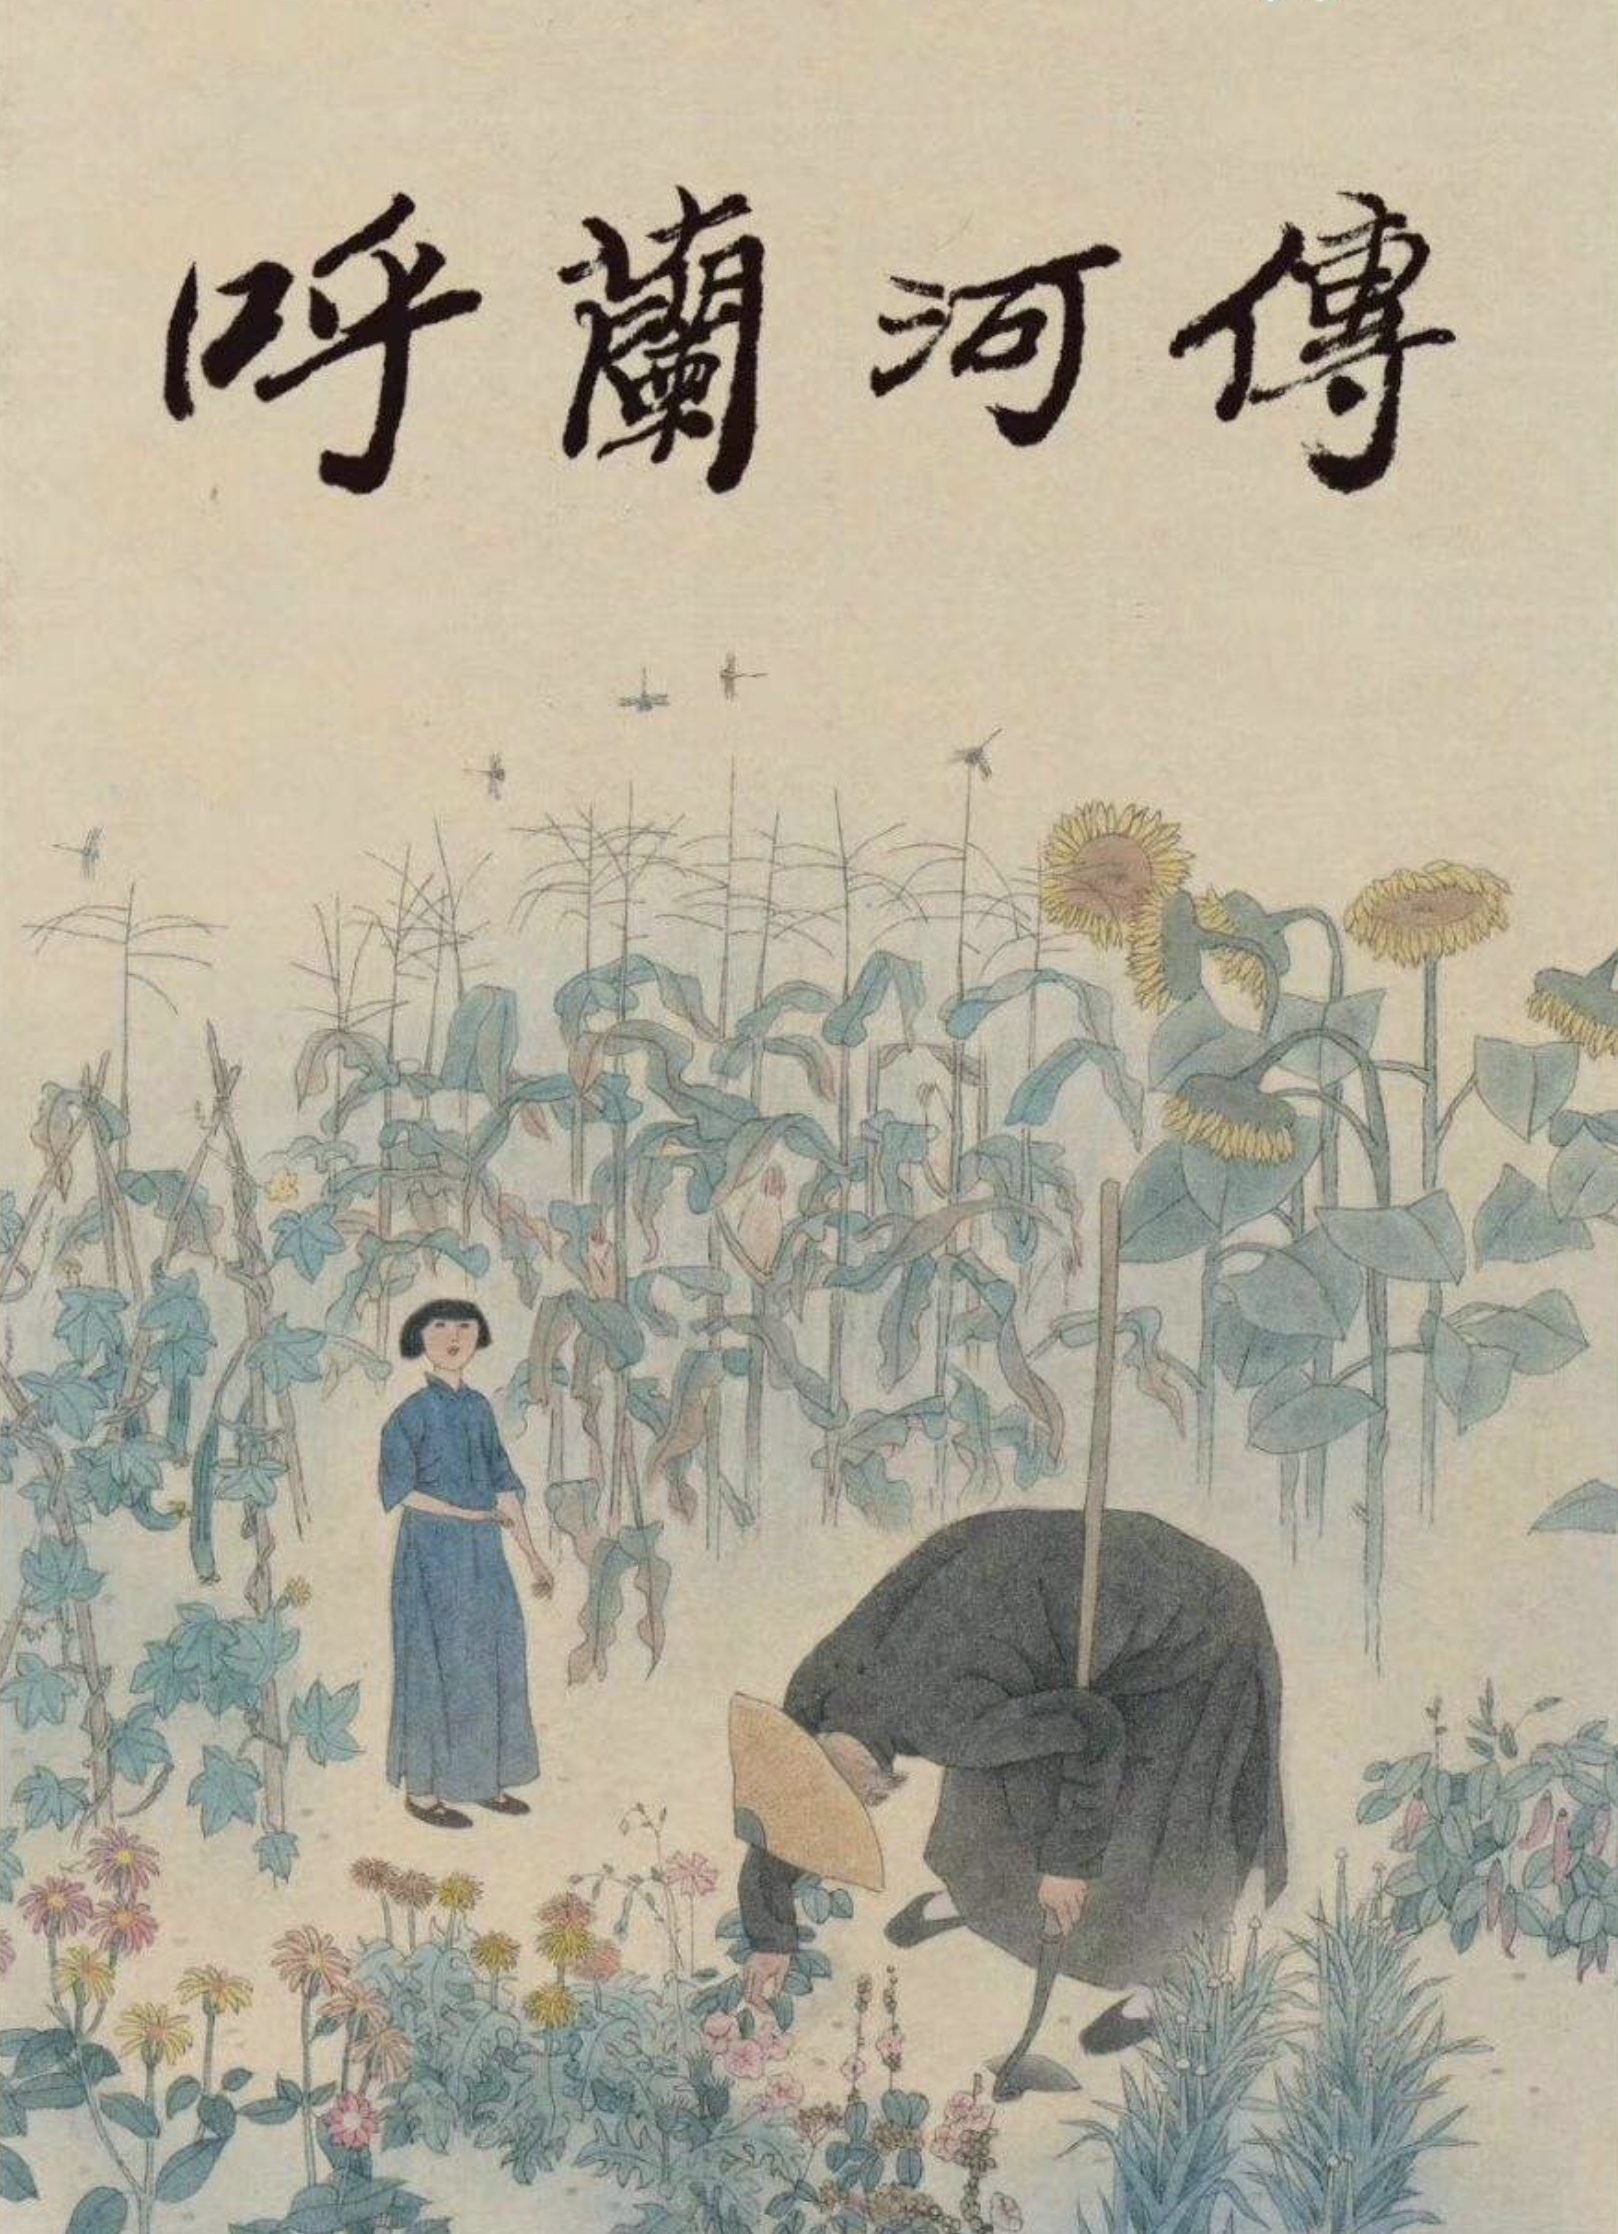 才女萧红的《呼兰河传》：充满童心、诗趣和灵感的最后一部小说